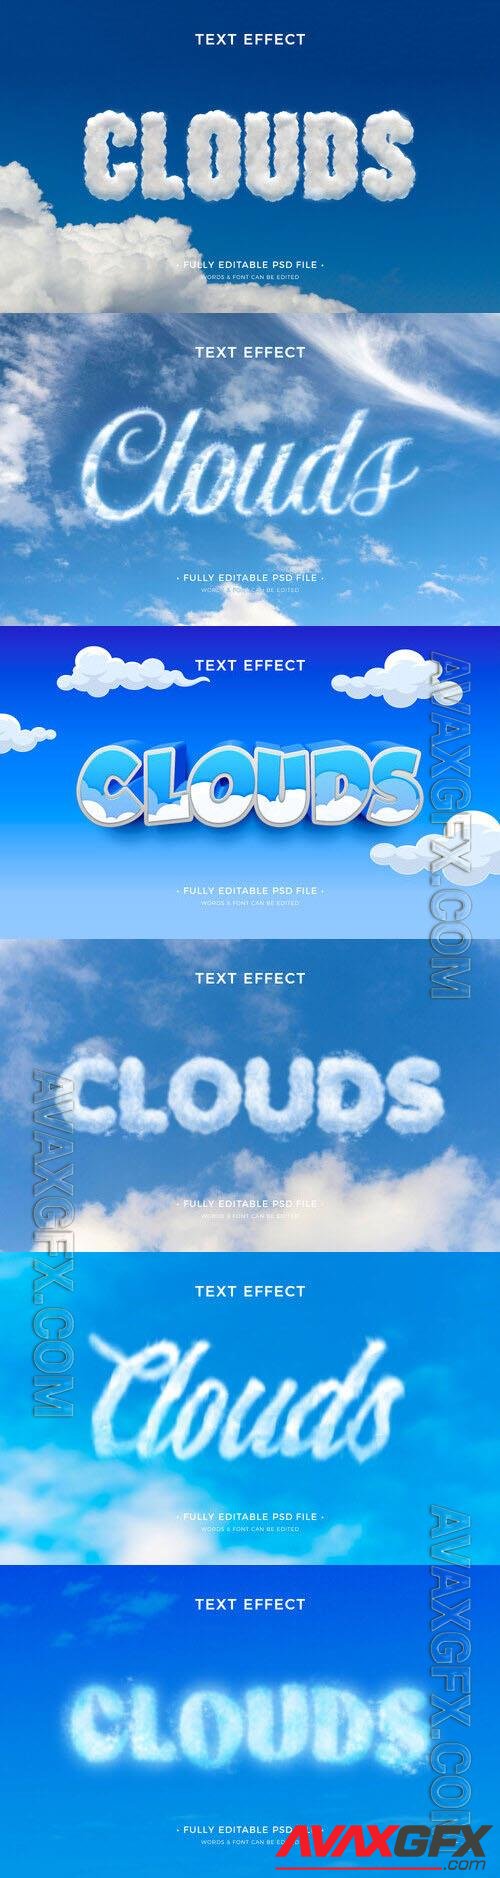 PSD clouds text effect [PSD]